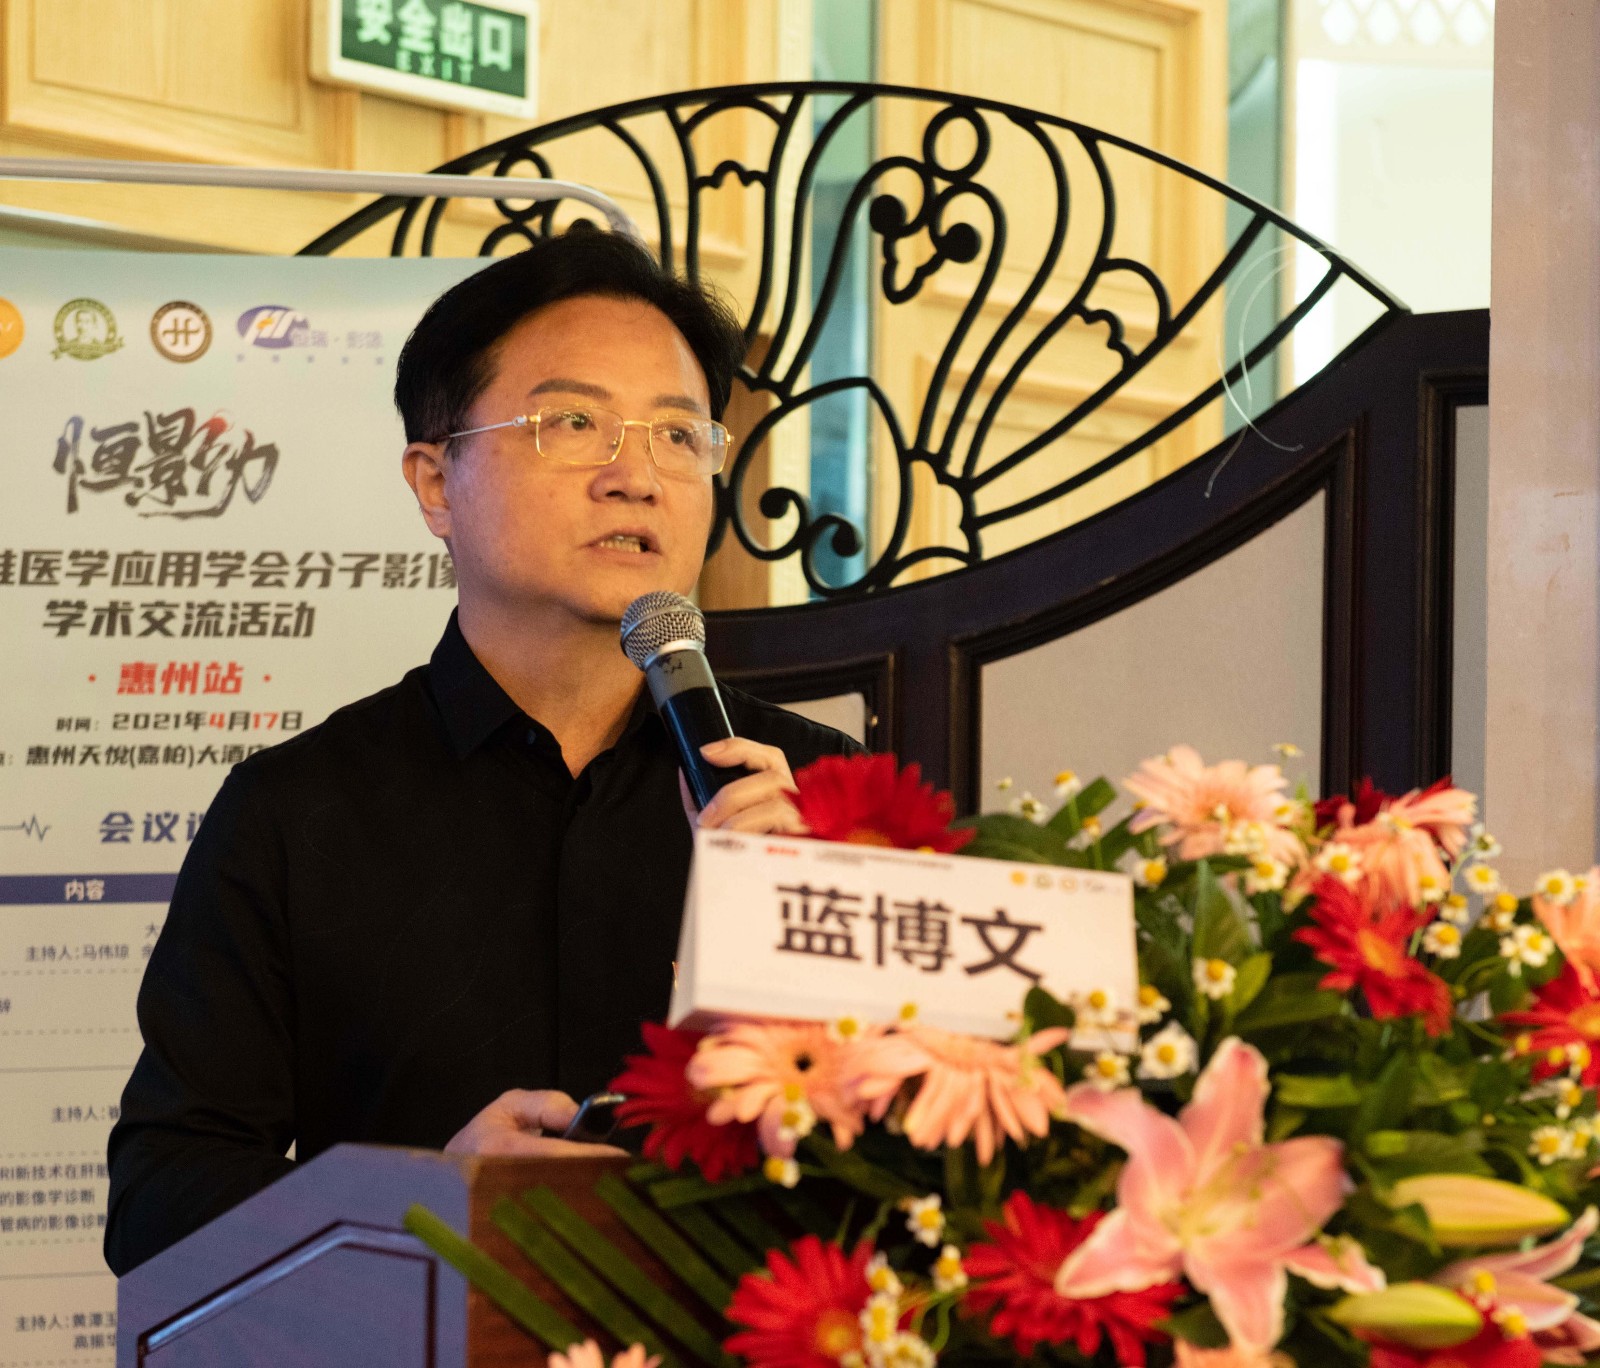 惠州市中心人民医院影像科主任蓝博文教授做《颈部影像误诊病例分析》专题报告